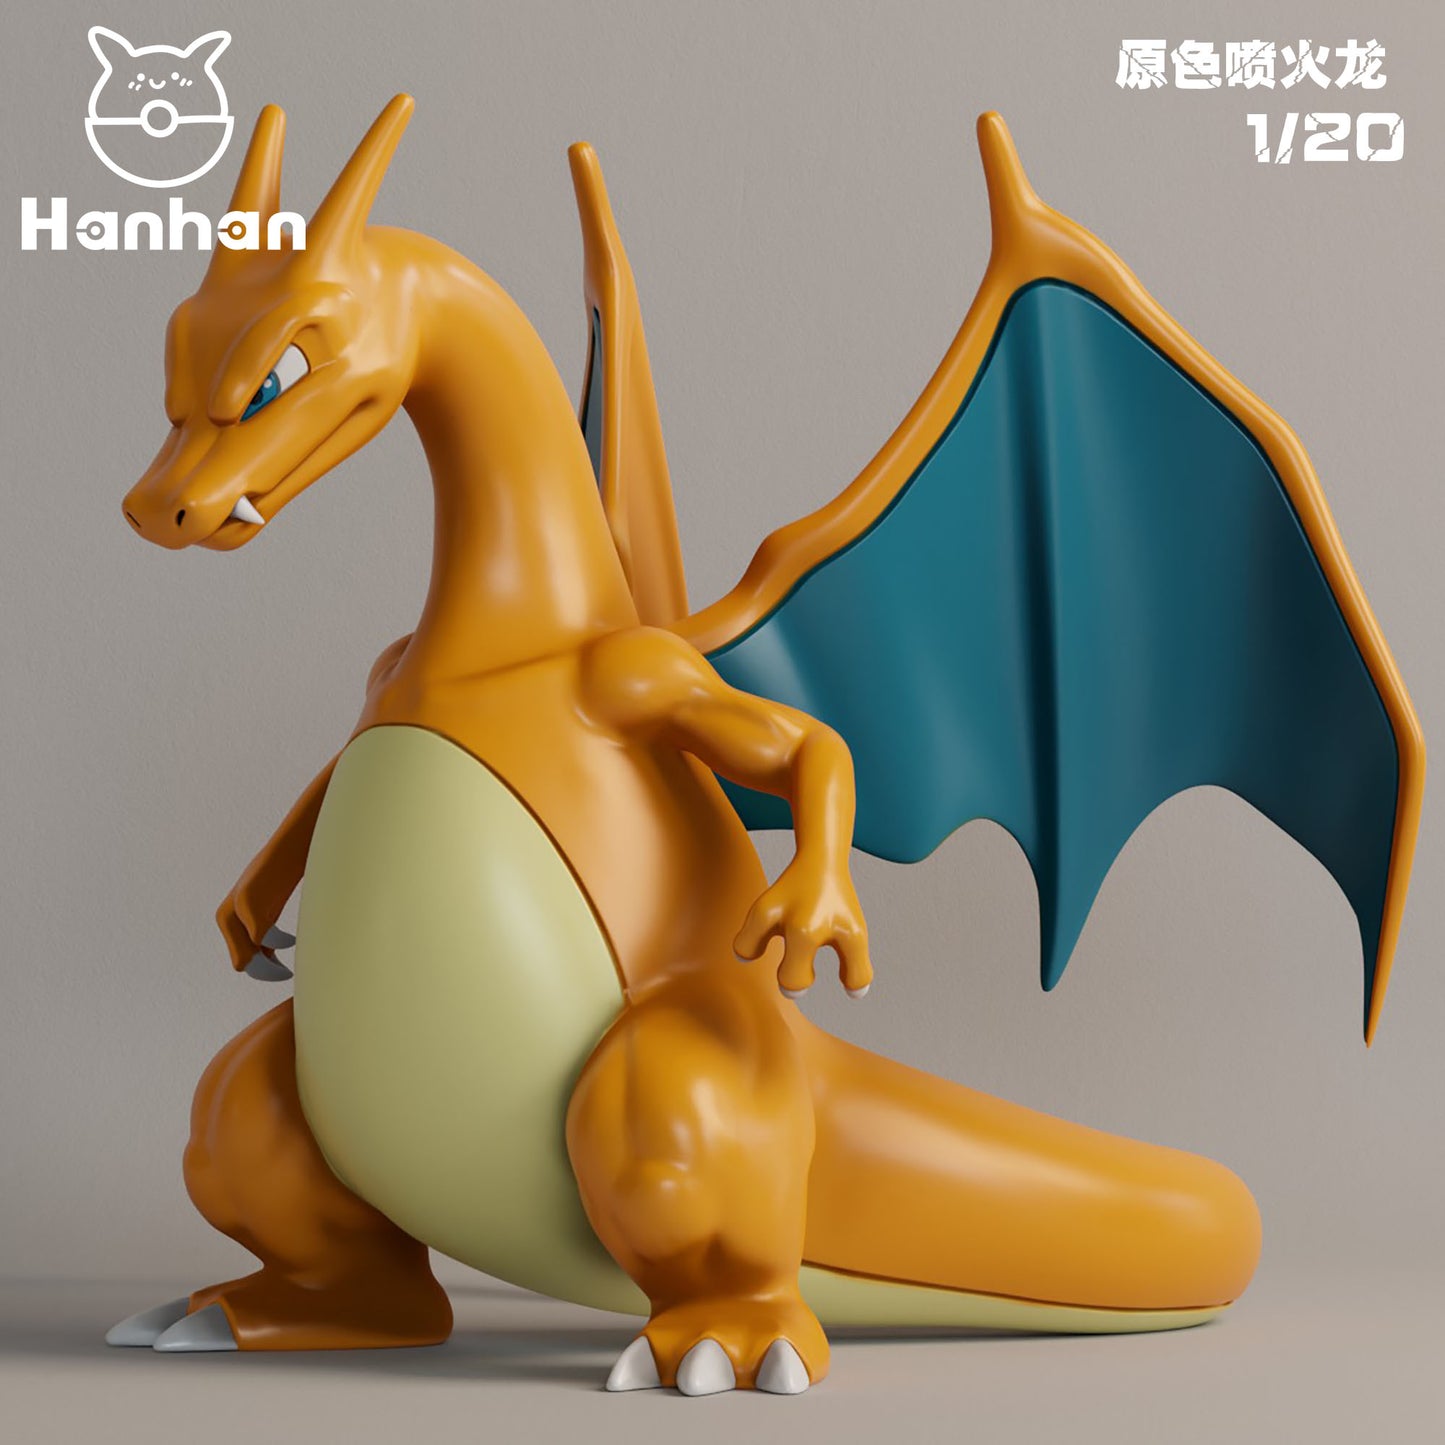 〖Pre-order〗Pokemon Scale World Charizard #006 1:10 1:20 - HH Studio